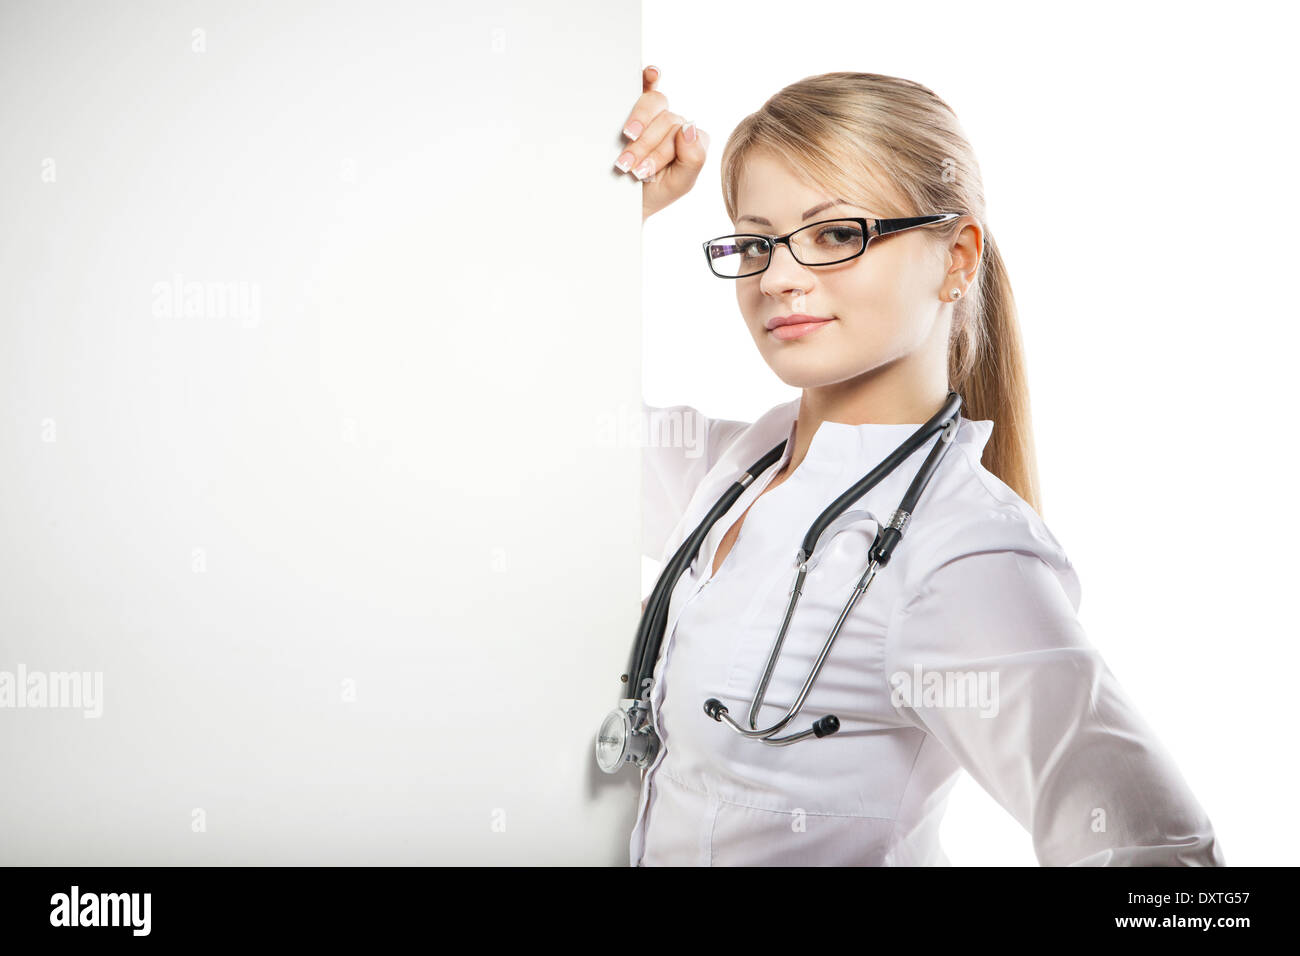 Carte médicale médecin santé bannière gens personne sourire féminin soins médecine signe heureux isolé poster board vierge billboard Banque D'Images